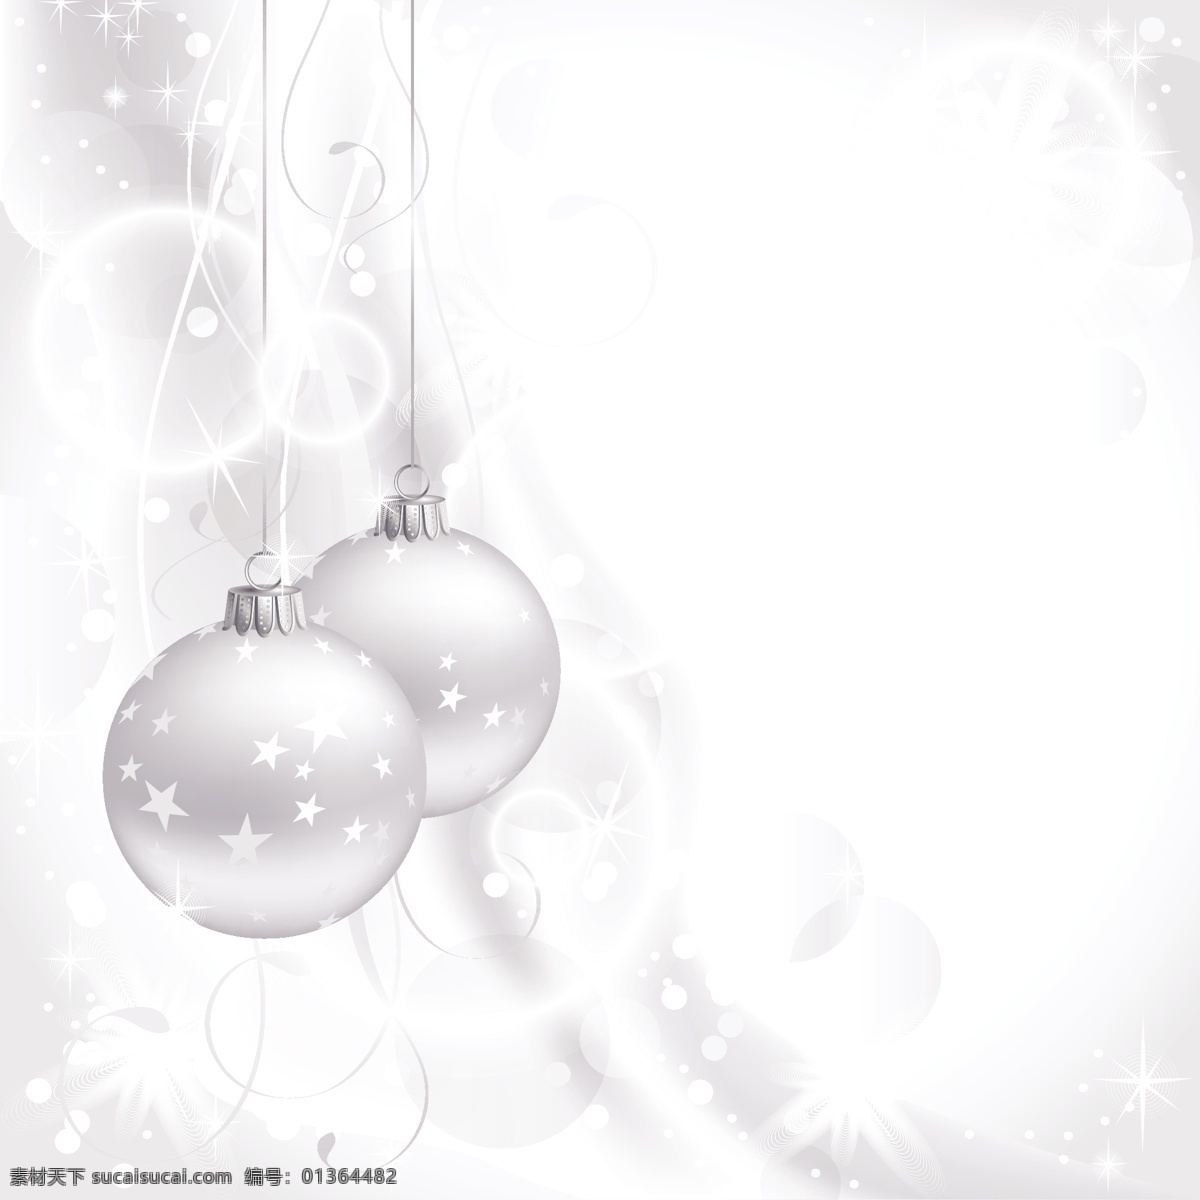 圣诞 水晶球 黄色 矢量 背景 球 透明 星星 雪 lob 白色的球 矢量图 其他节日